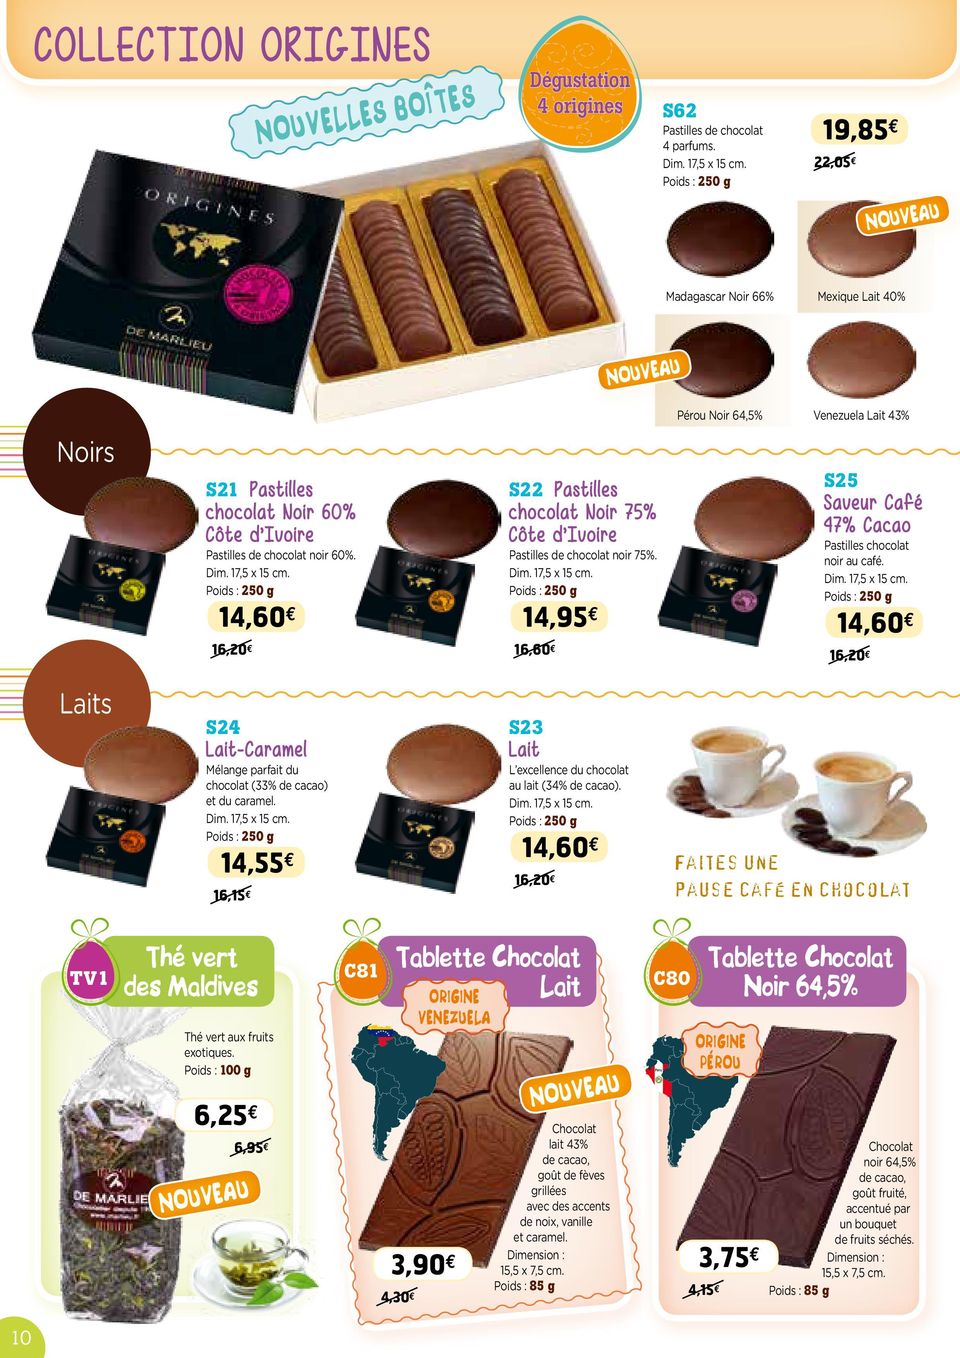 14,60 e 16,20 e S22 Pastilles chocolat Noir 75% Côte d Ivoire Pastilles de chocolat noir 75%. Dim. 17,5 x 15 cm.